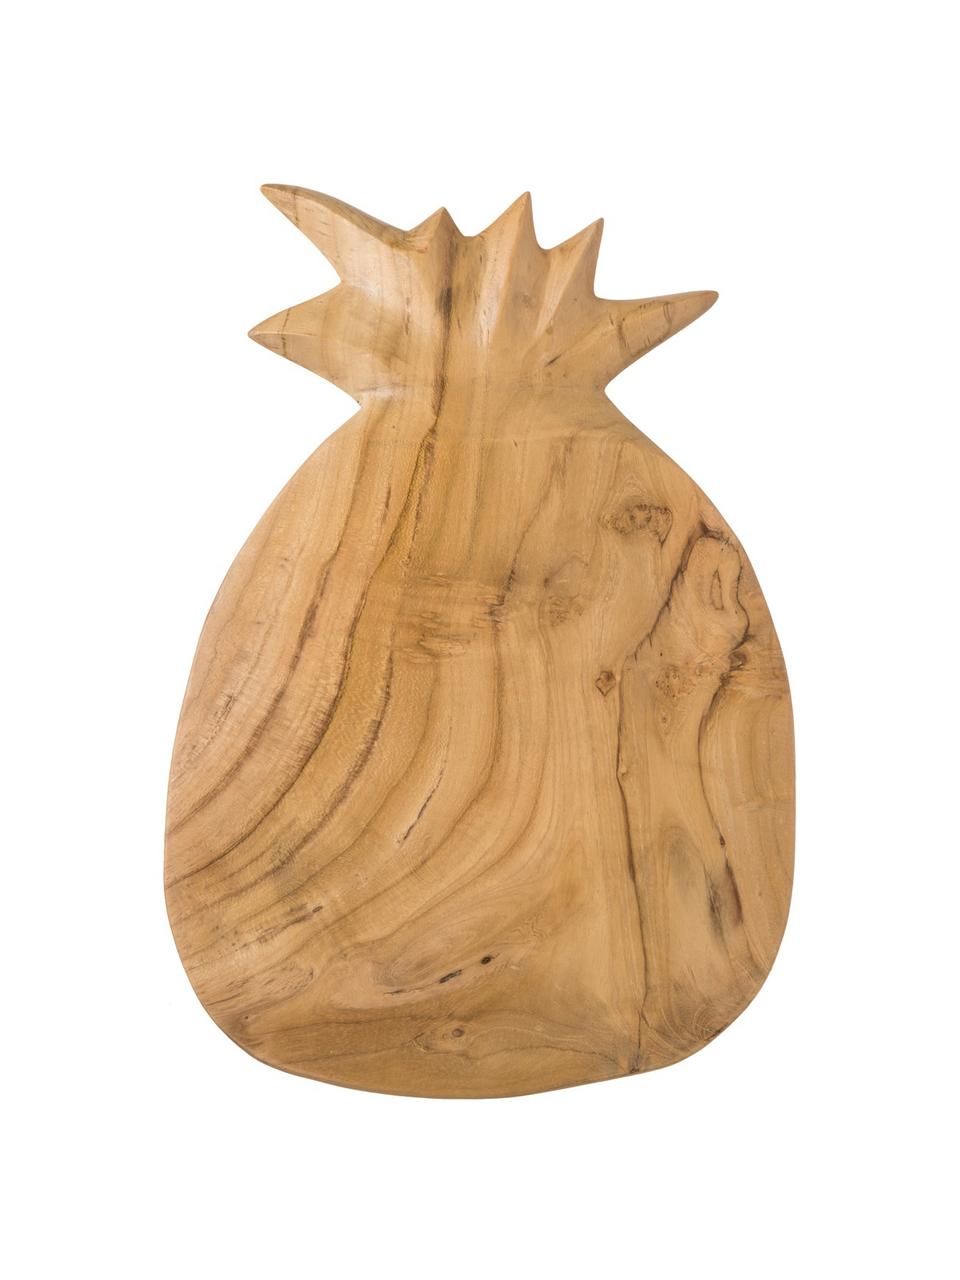 Prkénko z teakového dřeva Pine, D 35 cm x Š 23 cm, Teakové dřevo, Teakové dřevo, D 35 cm